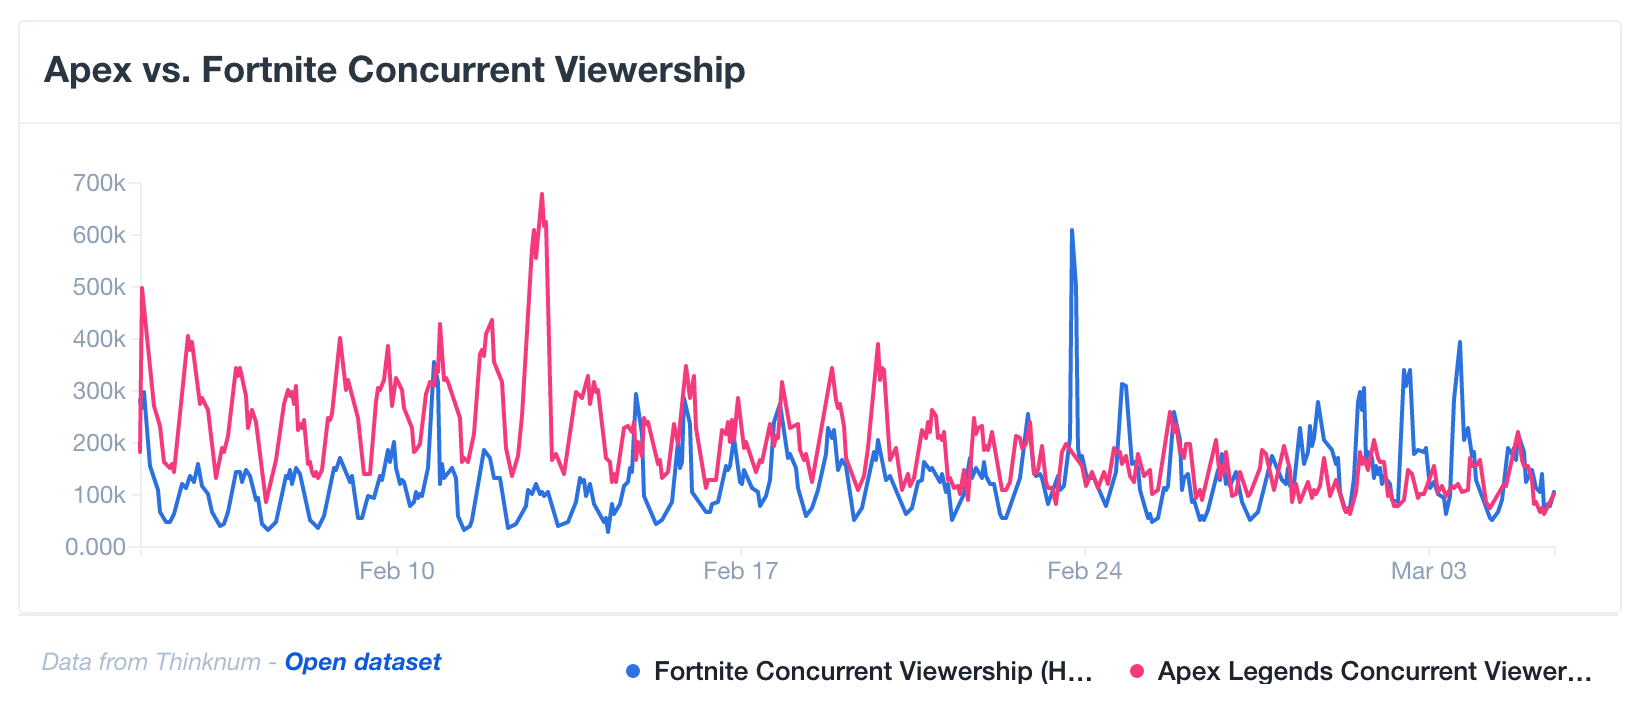 Twitchの視聴者数データでみる「Apex vs Fortnite」